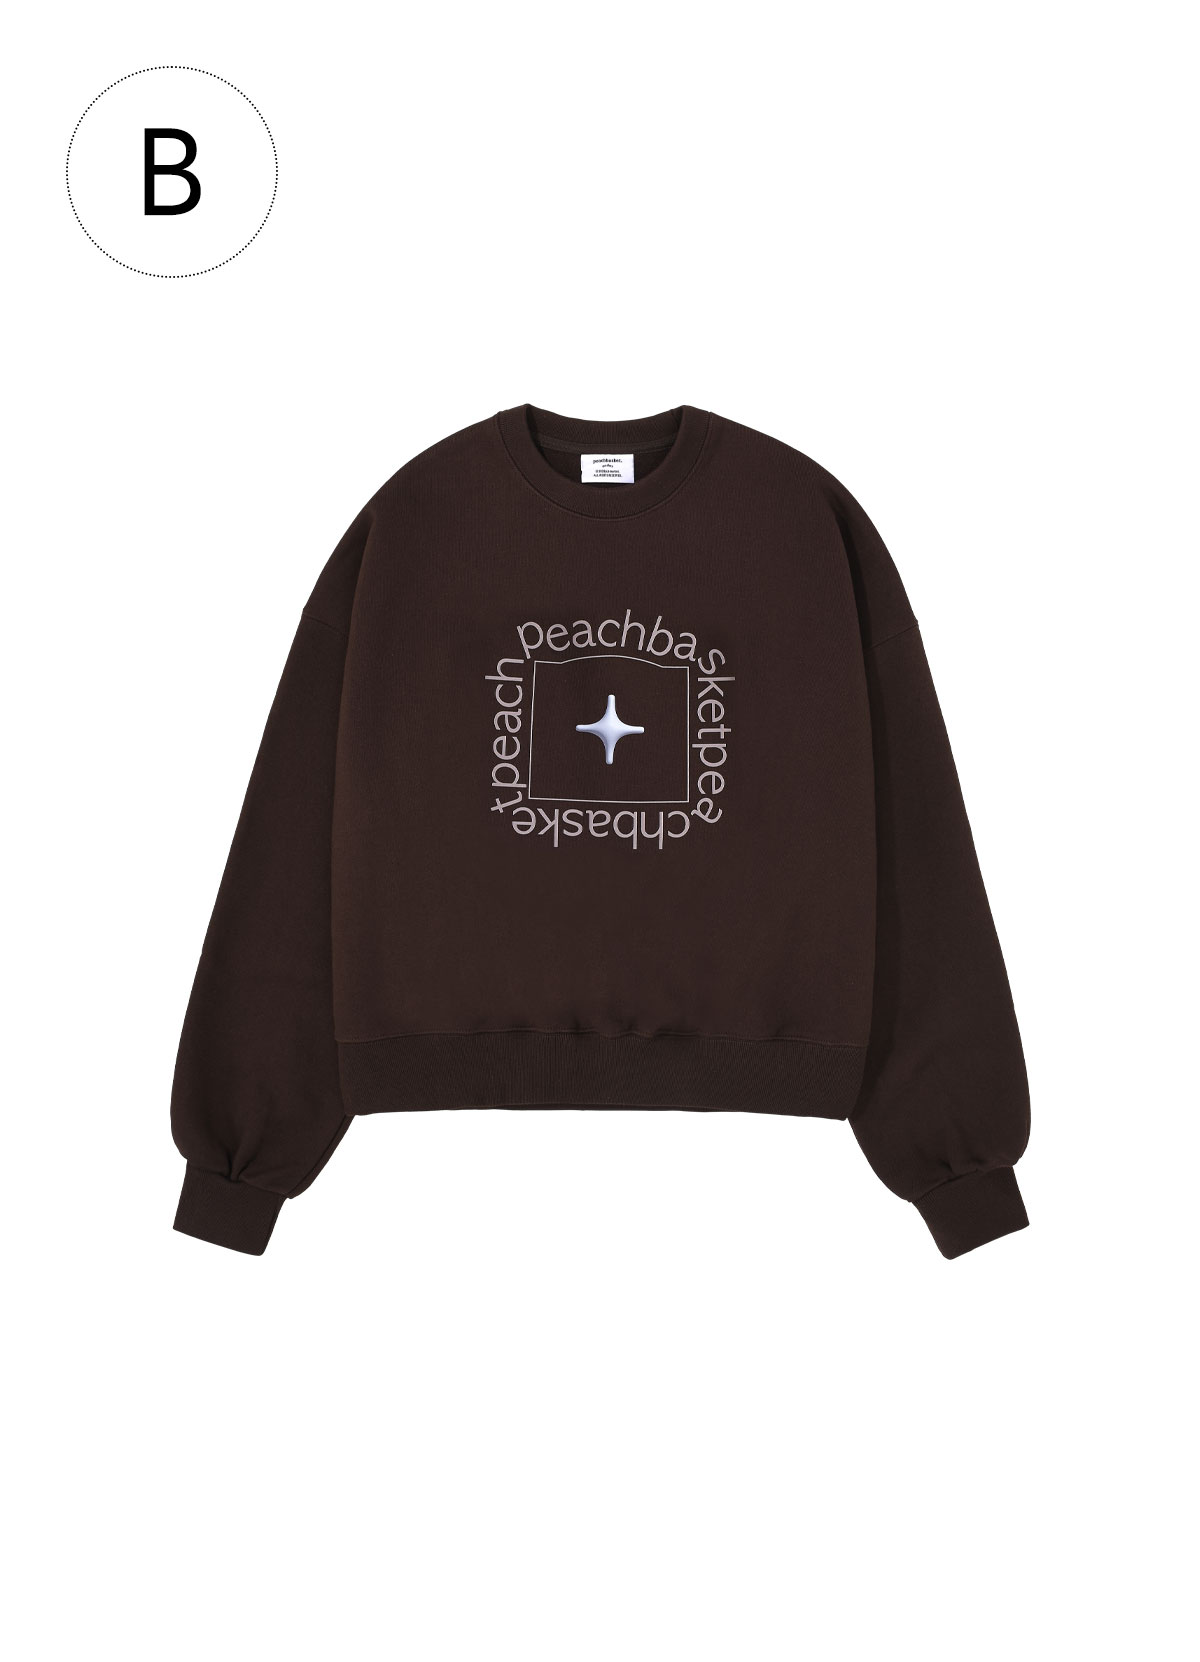 Ⓑ sparkle sweatshirt (brown)